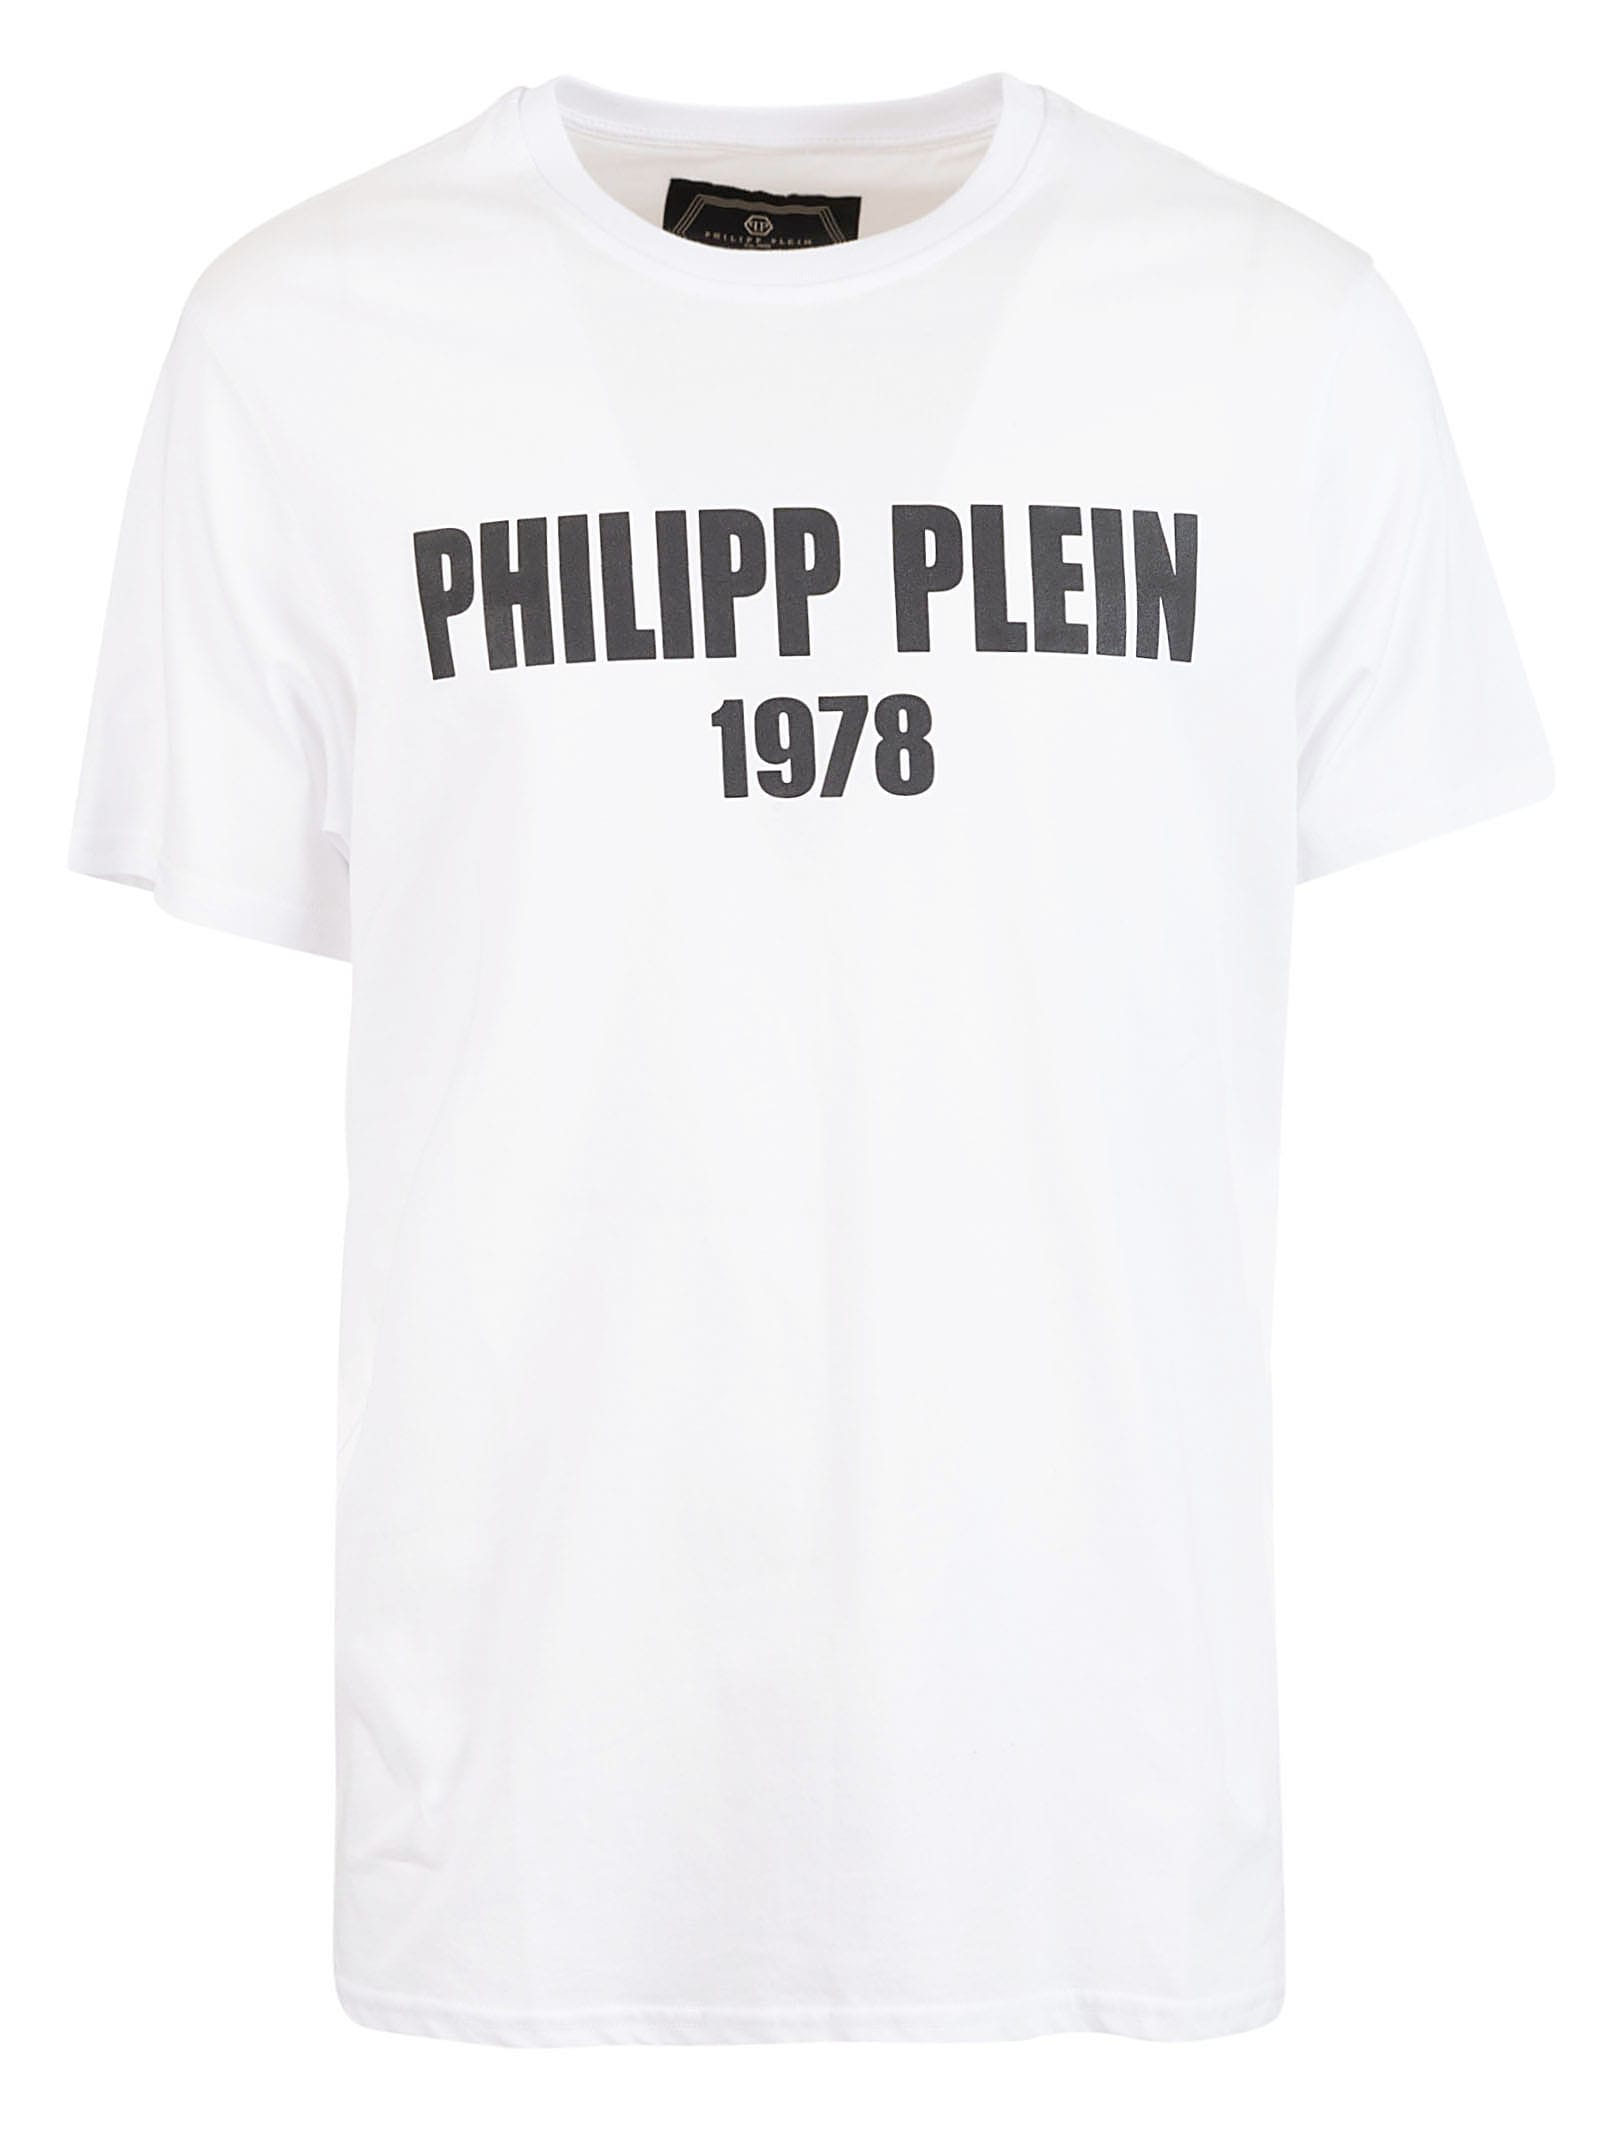 philip plein 1978